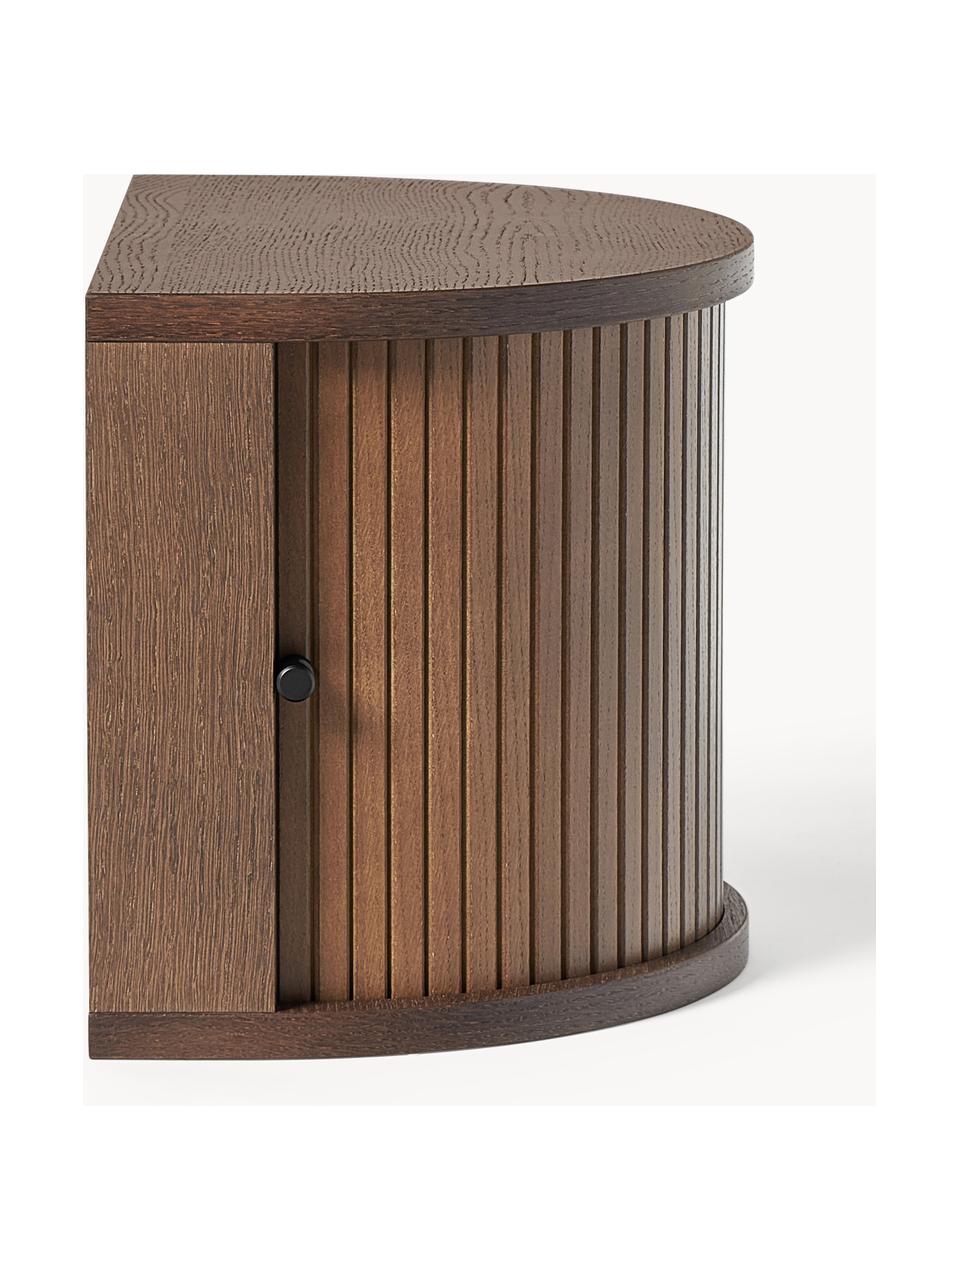 Nástěnný noční stolek s žebrováním Front, Dubové dřevo, tmavě hnědě lakované, Š 40 cm, V 30 cm